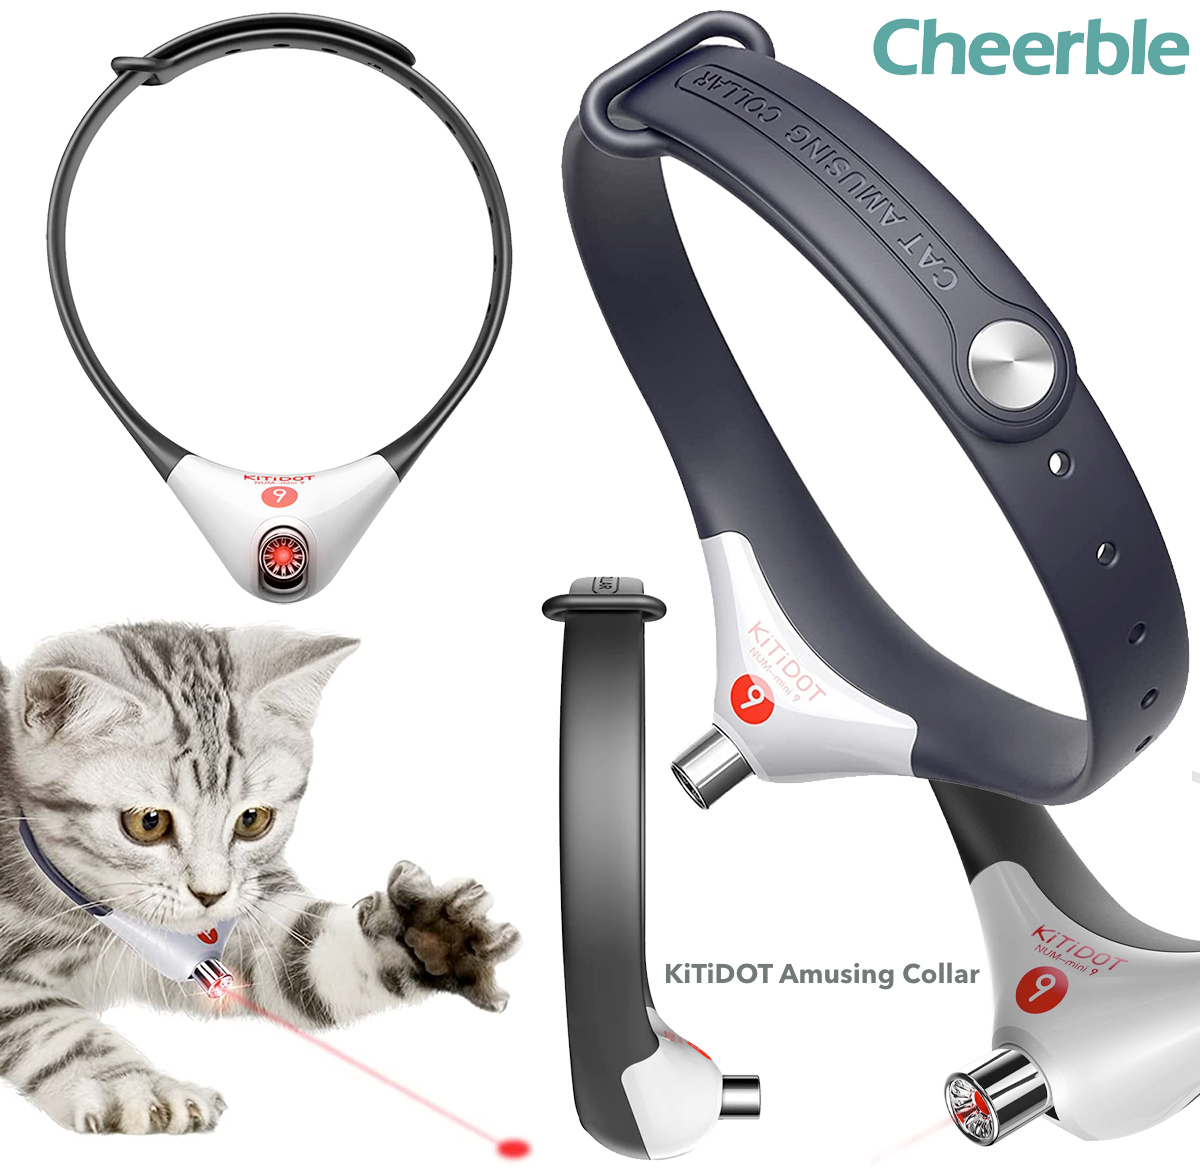 Coleira para gatos KiTiDOT com ponteiro laser integrado